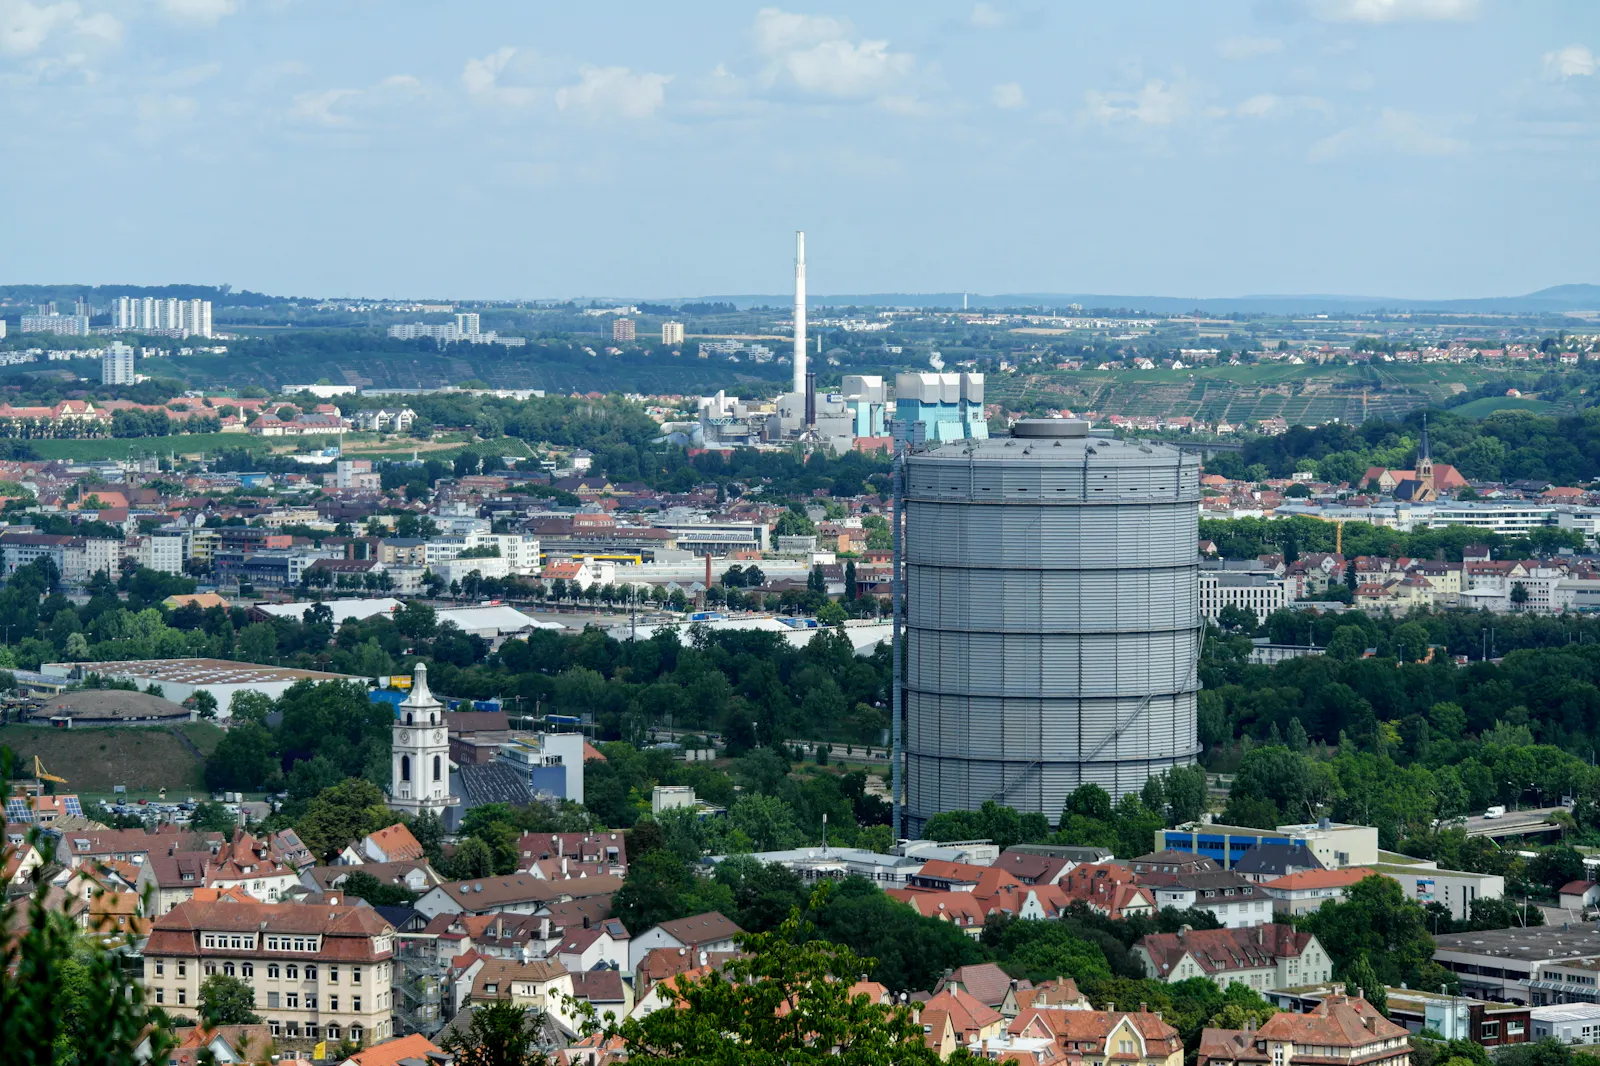 Aussicht über Stuttgart-Gaisburg mit Gaskessel und Gaisburger Kirche. Foto: Jürgen Brand